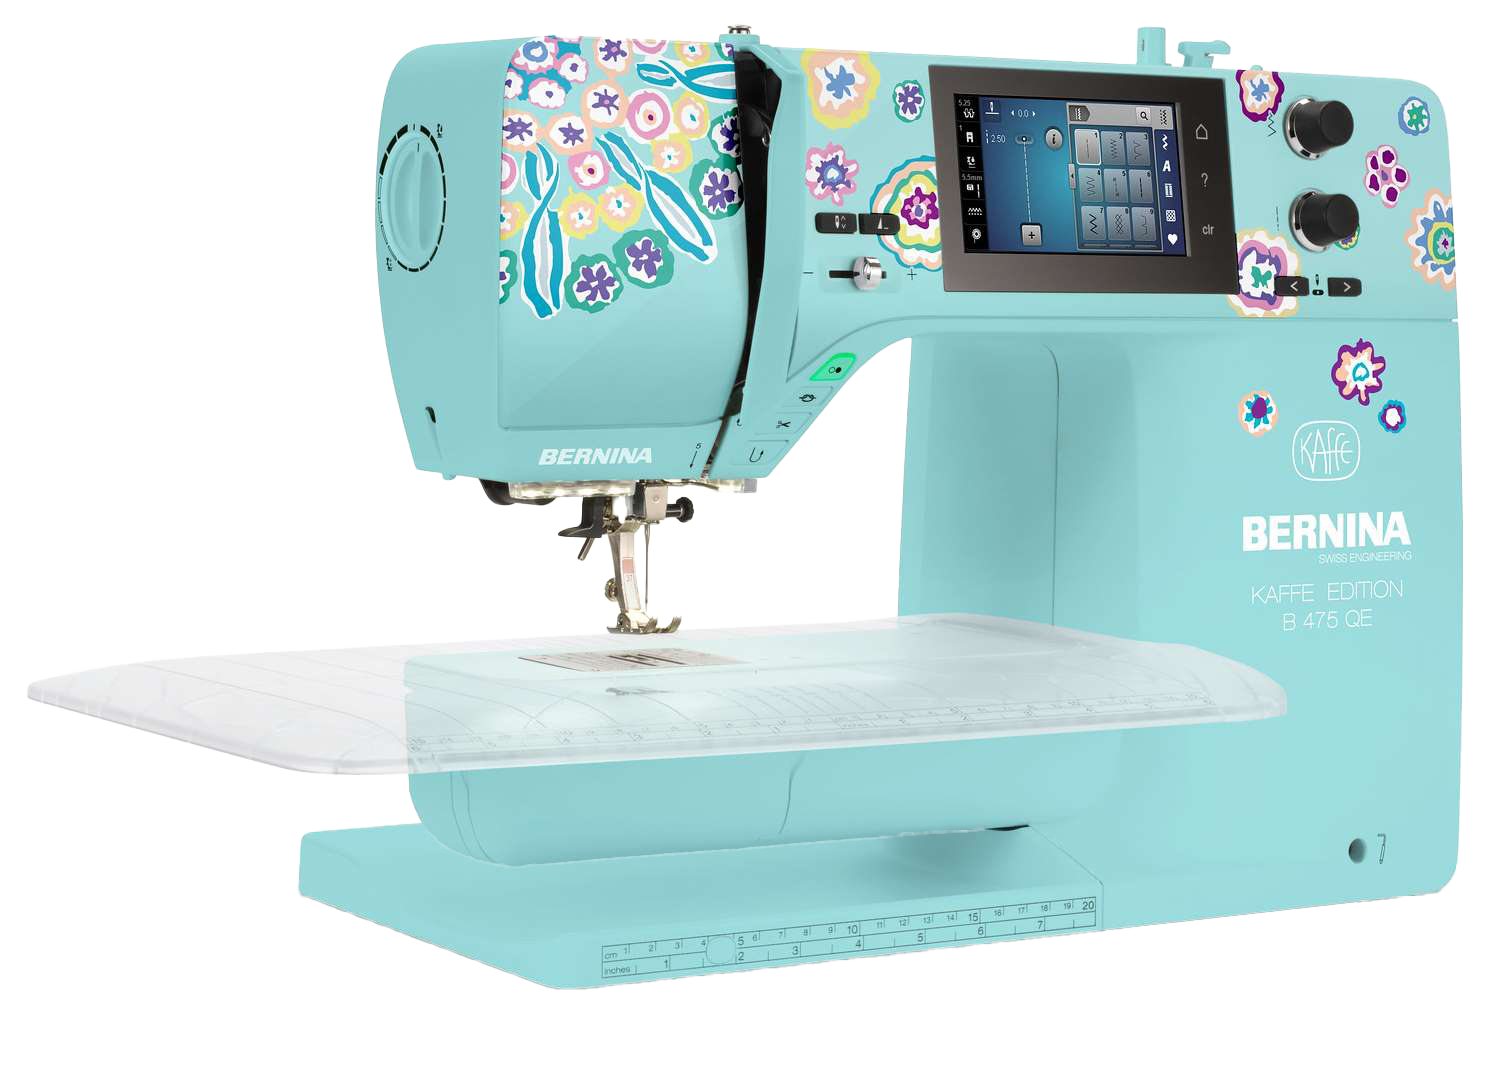 BERNINA 475 QE Kaffe Edition Sewing Machine